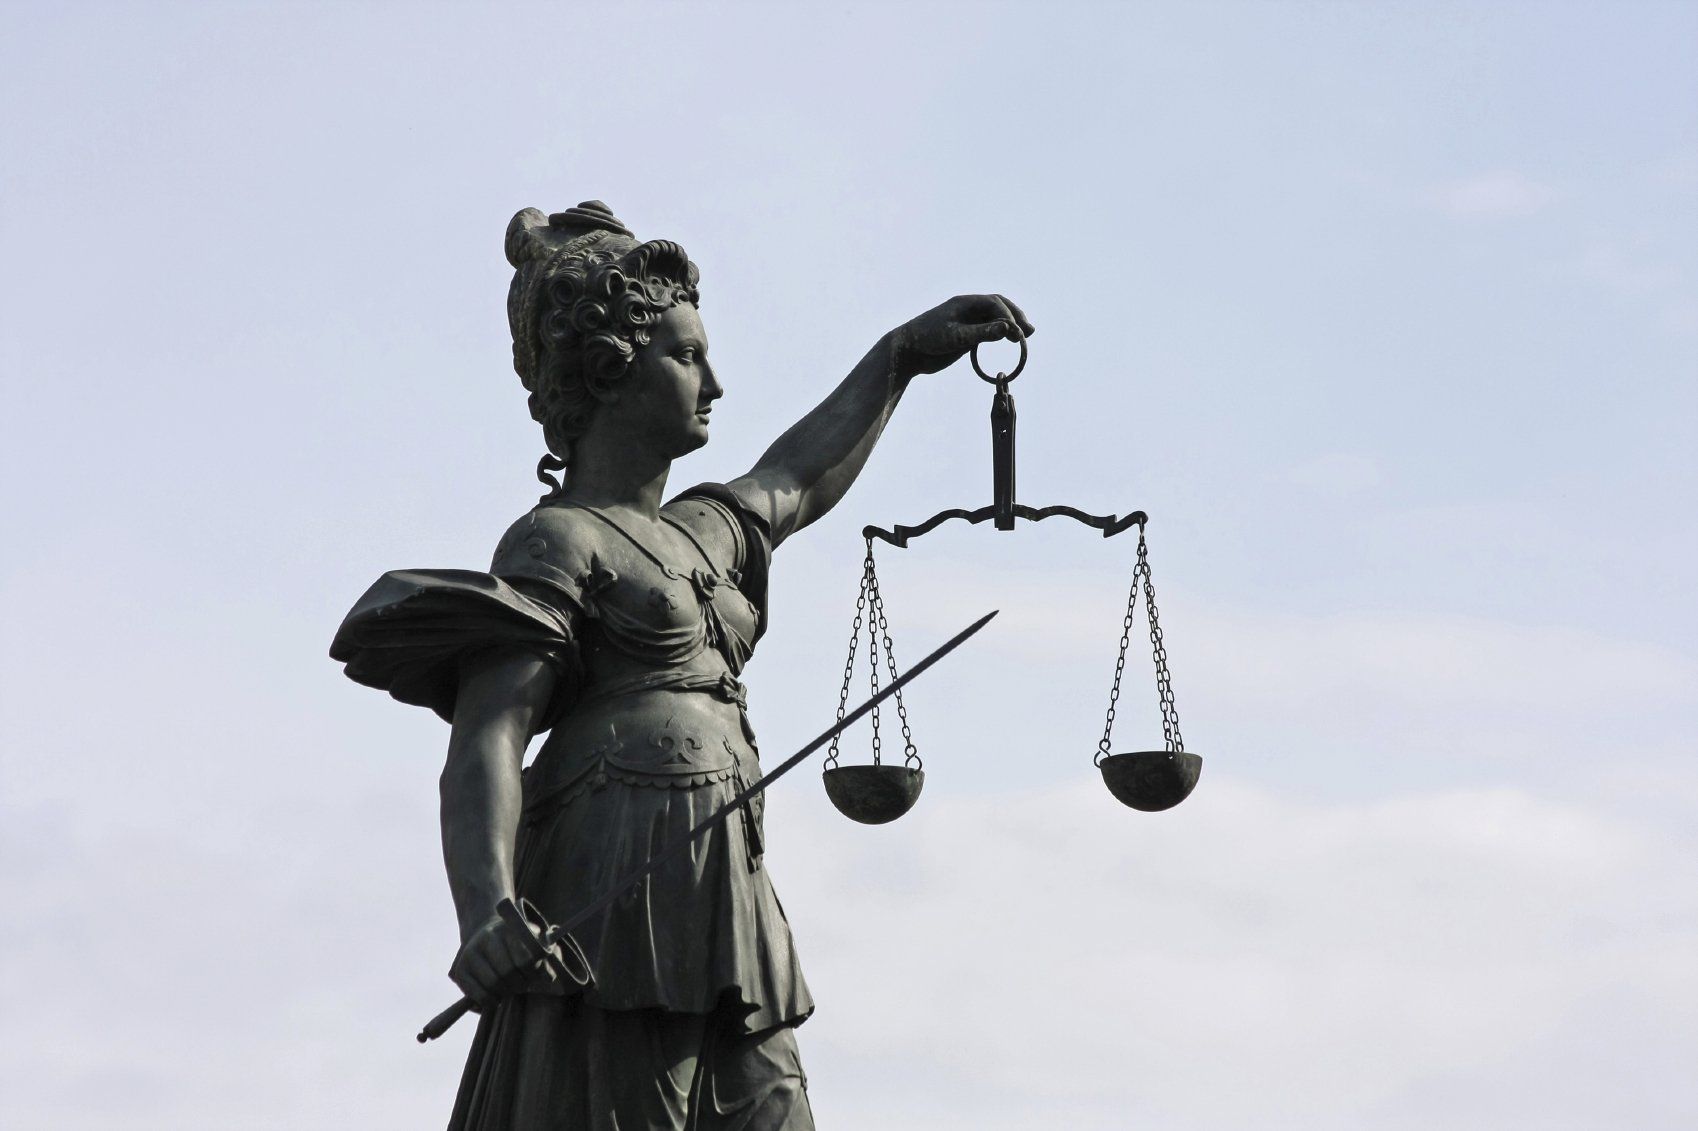 Eine Statue der Justizia